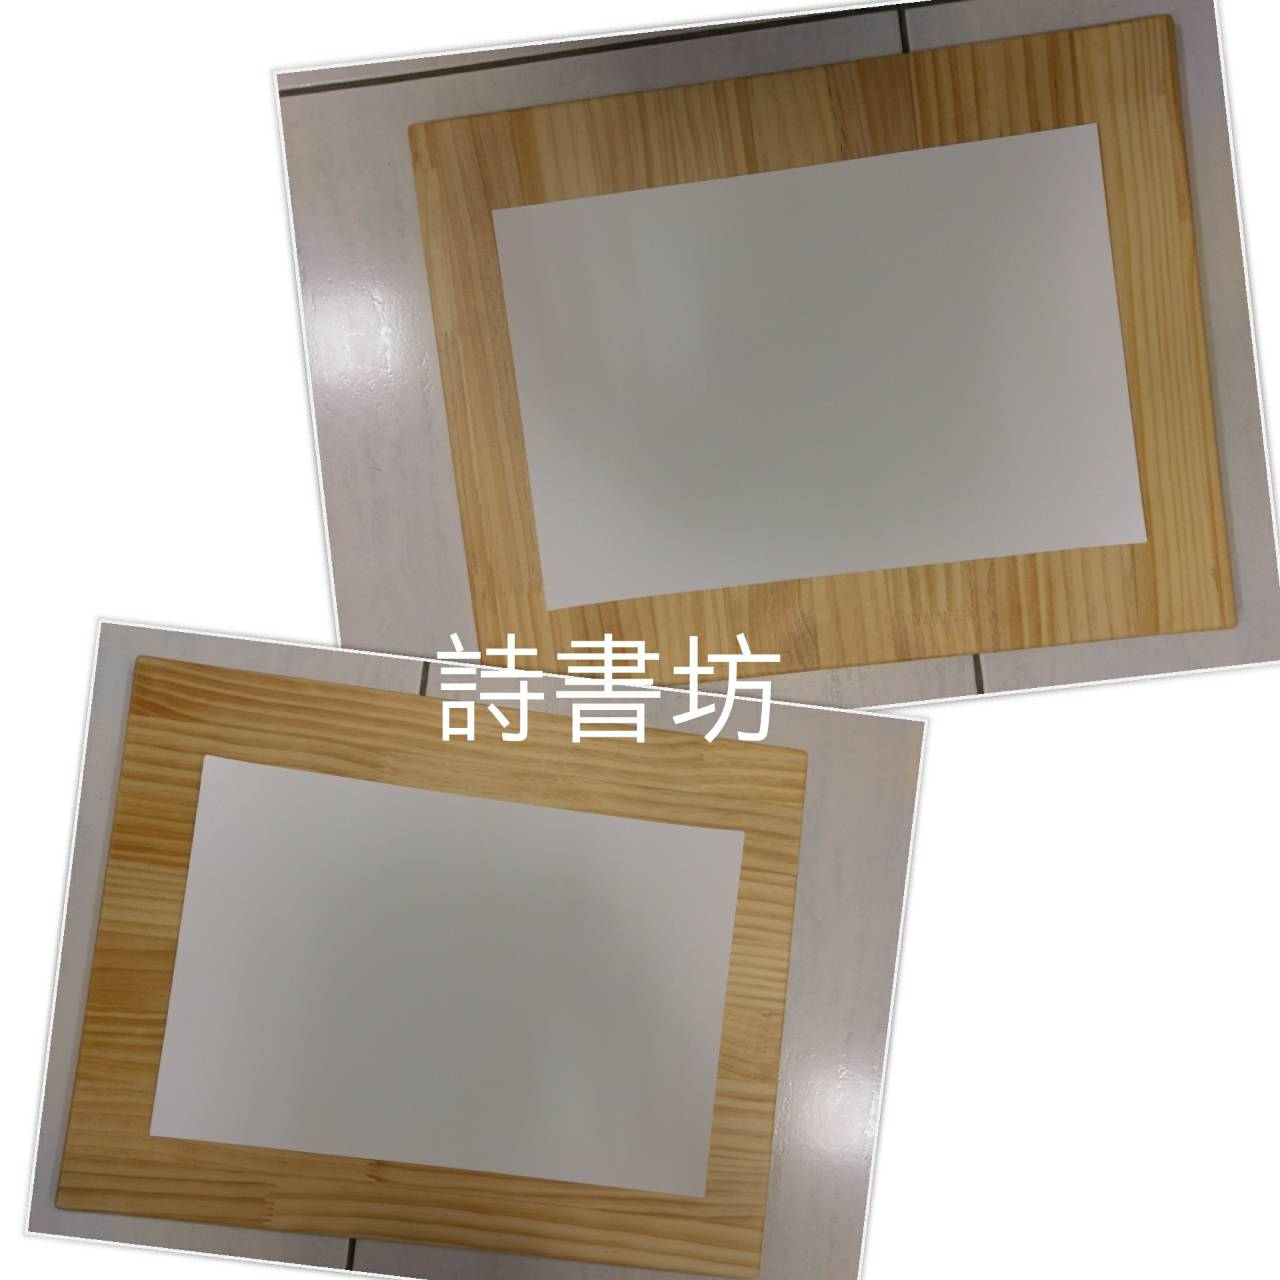 手工松木畫板(H-106)